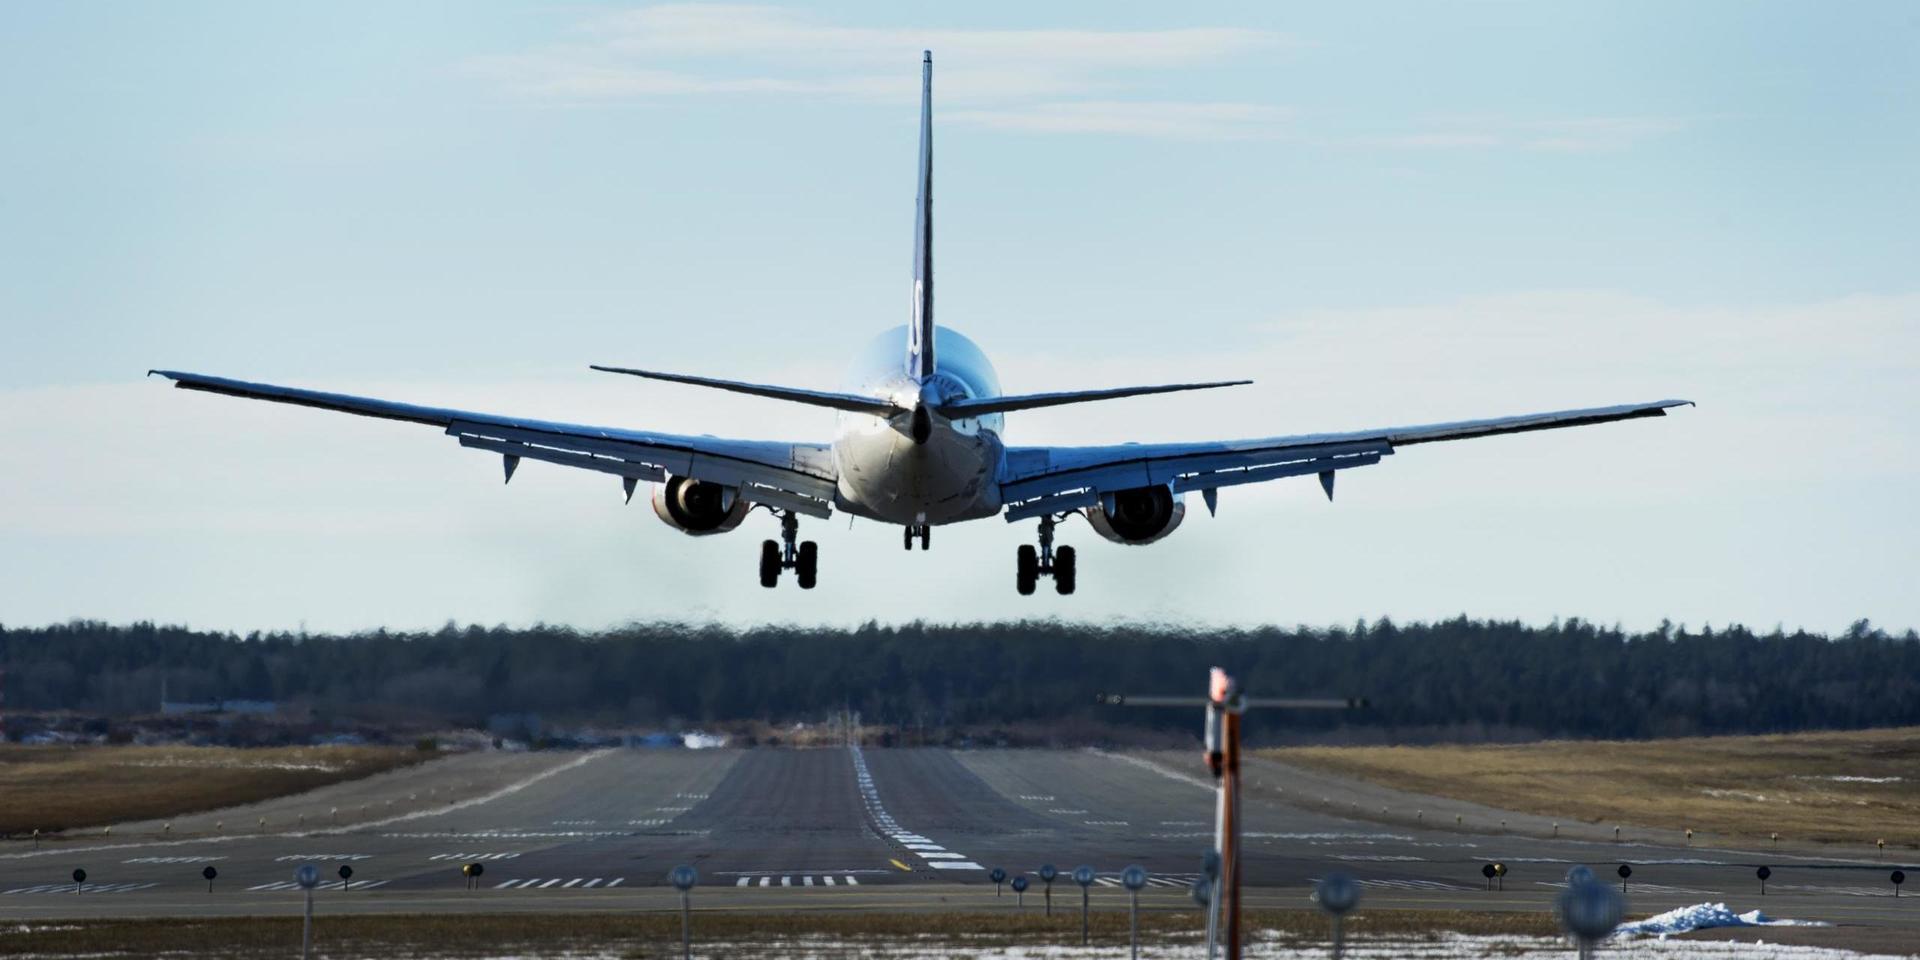 Går det svenska inrikesflyget in för landning blir det lättare att nå klimatmålen.